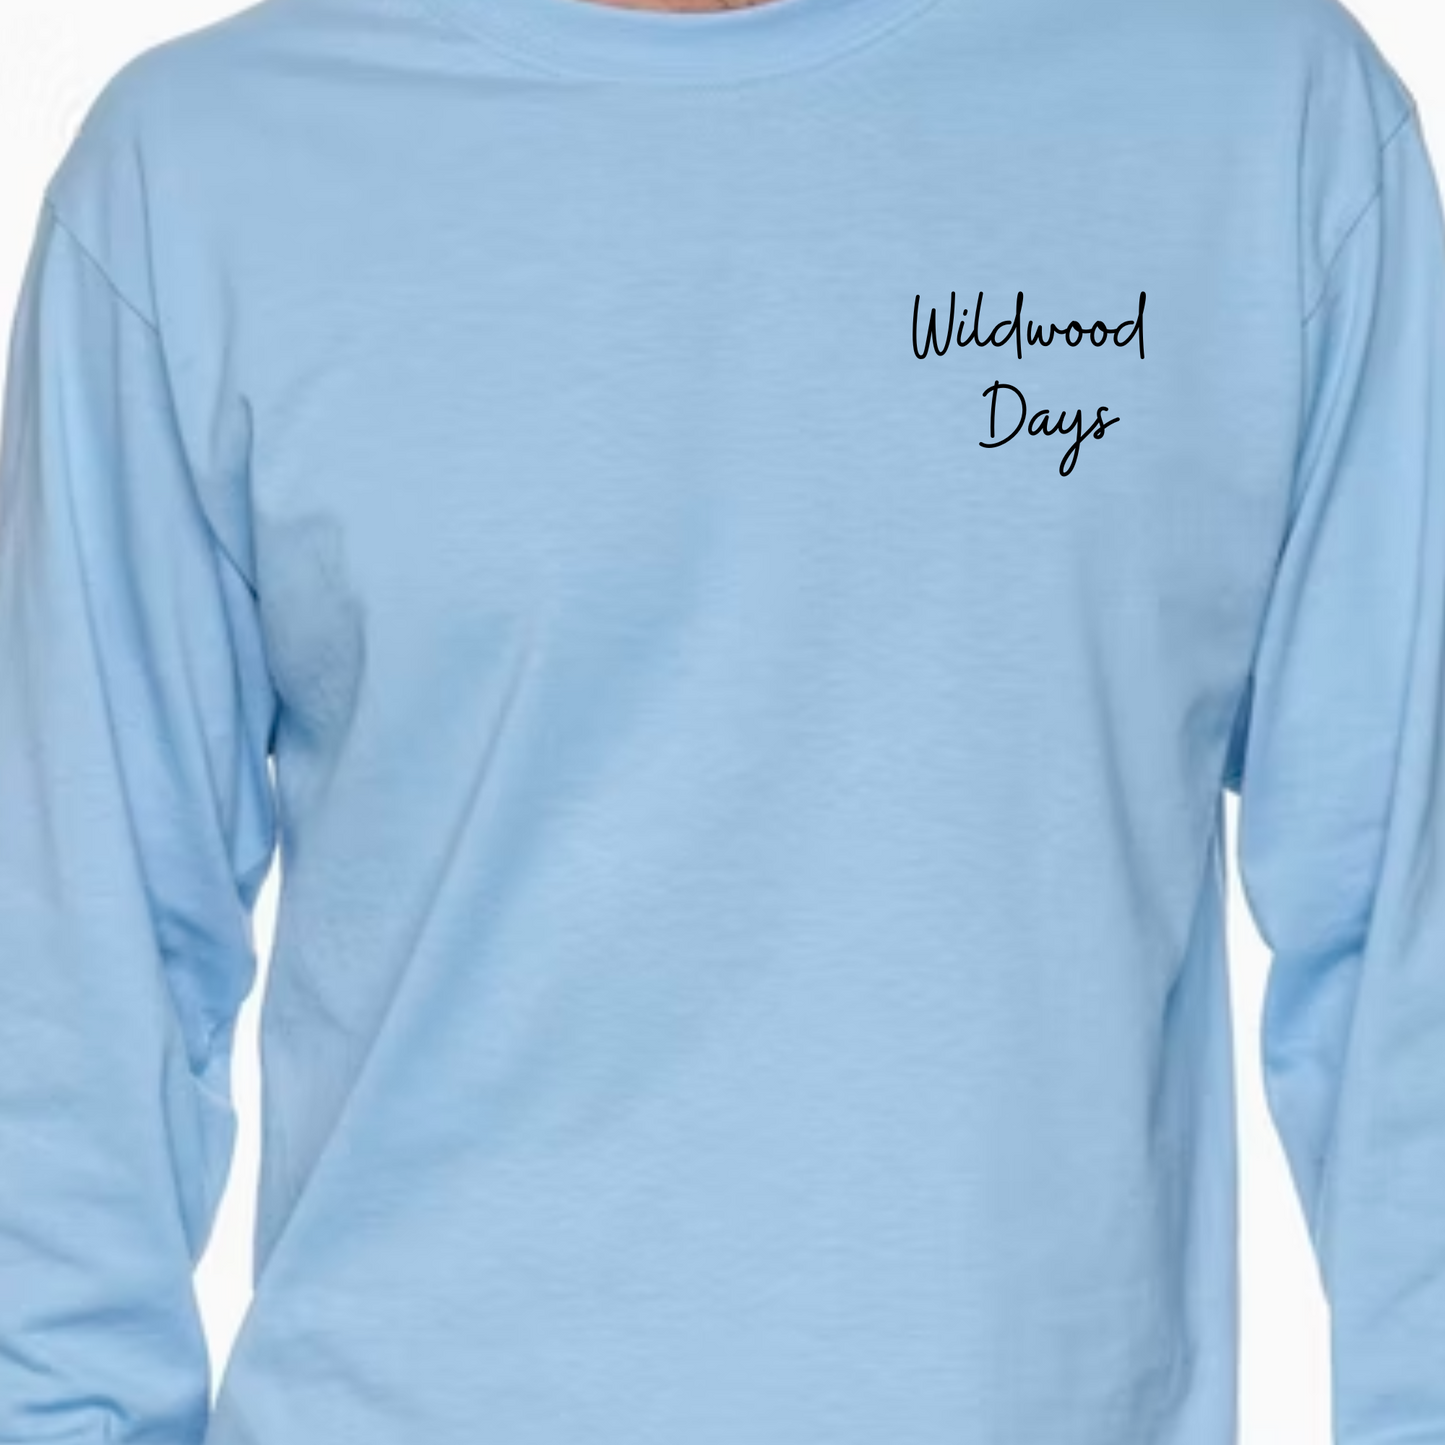 Wildwood Days Graphic Logos Long Sleeve T Shirt